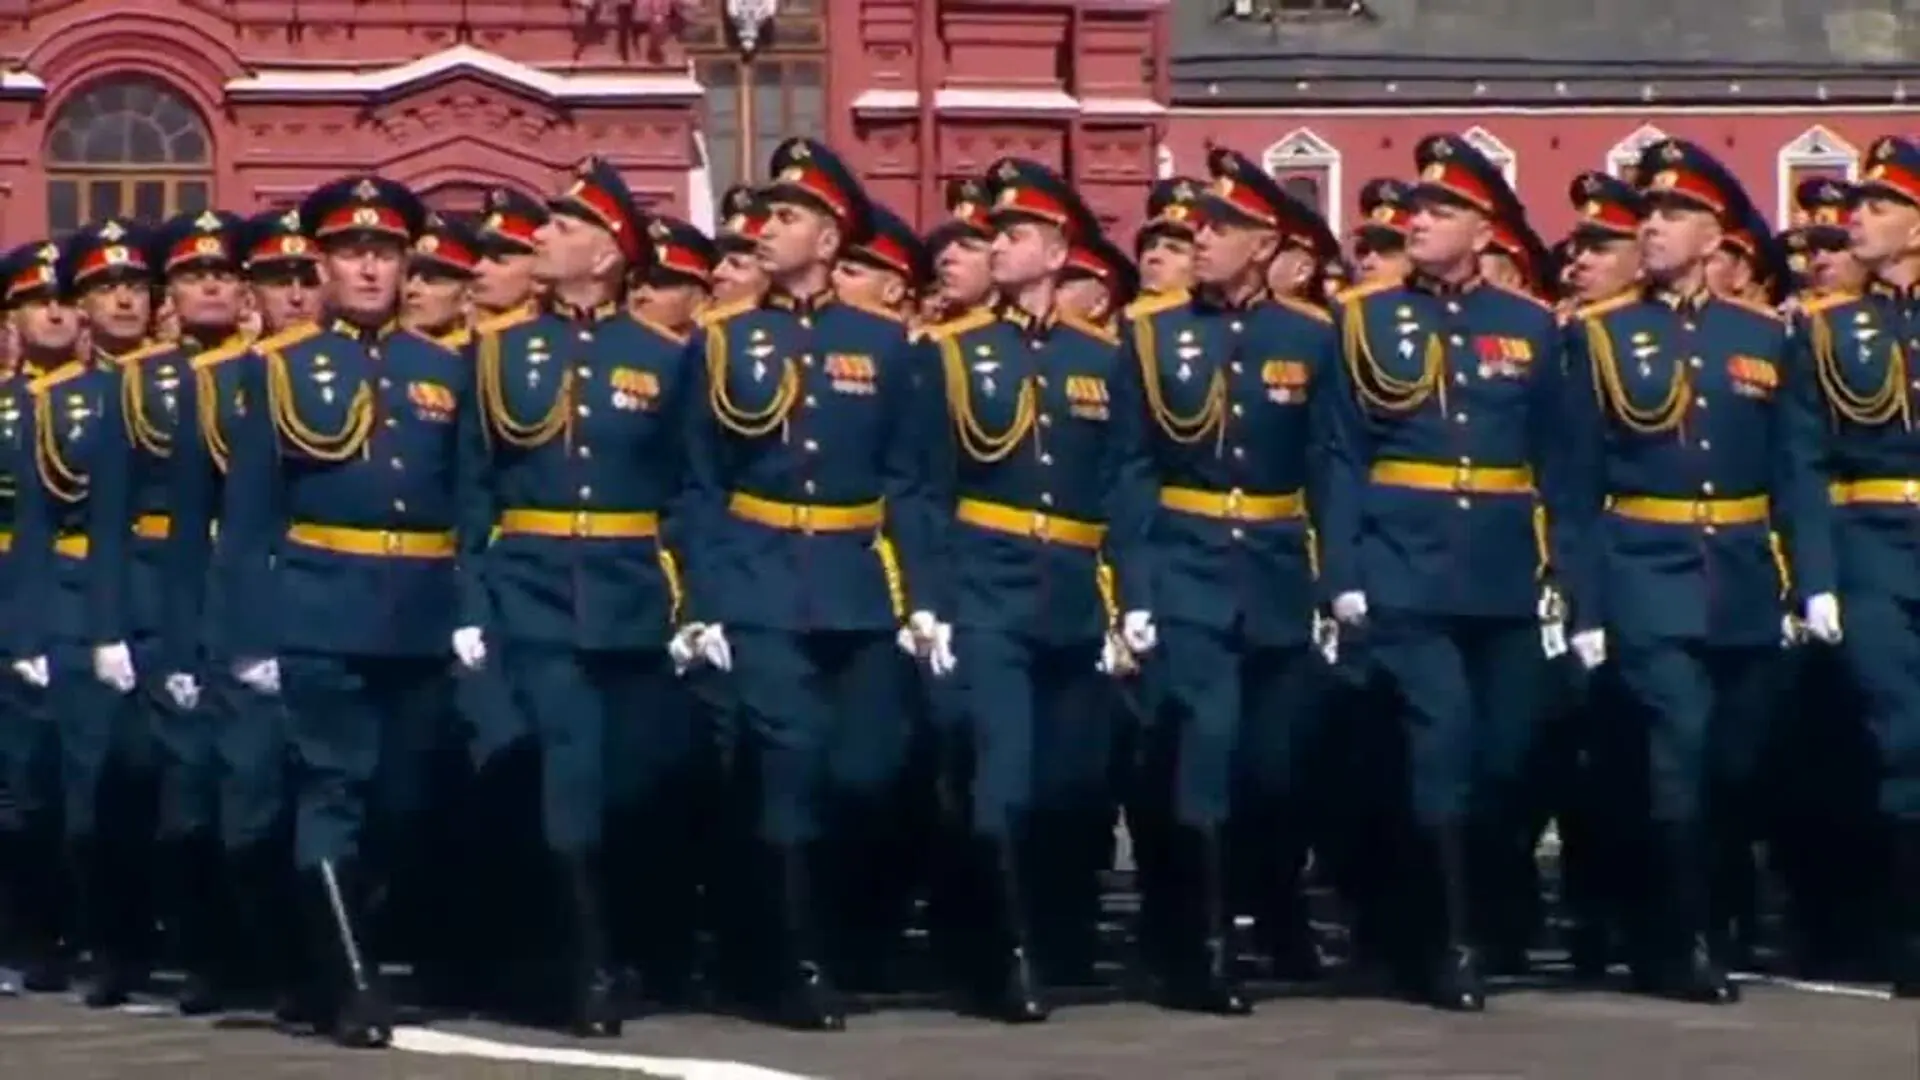 Putin anuncia una movilización militar &quot;inmediata&quot; de parte de la población rusa